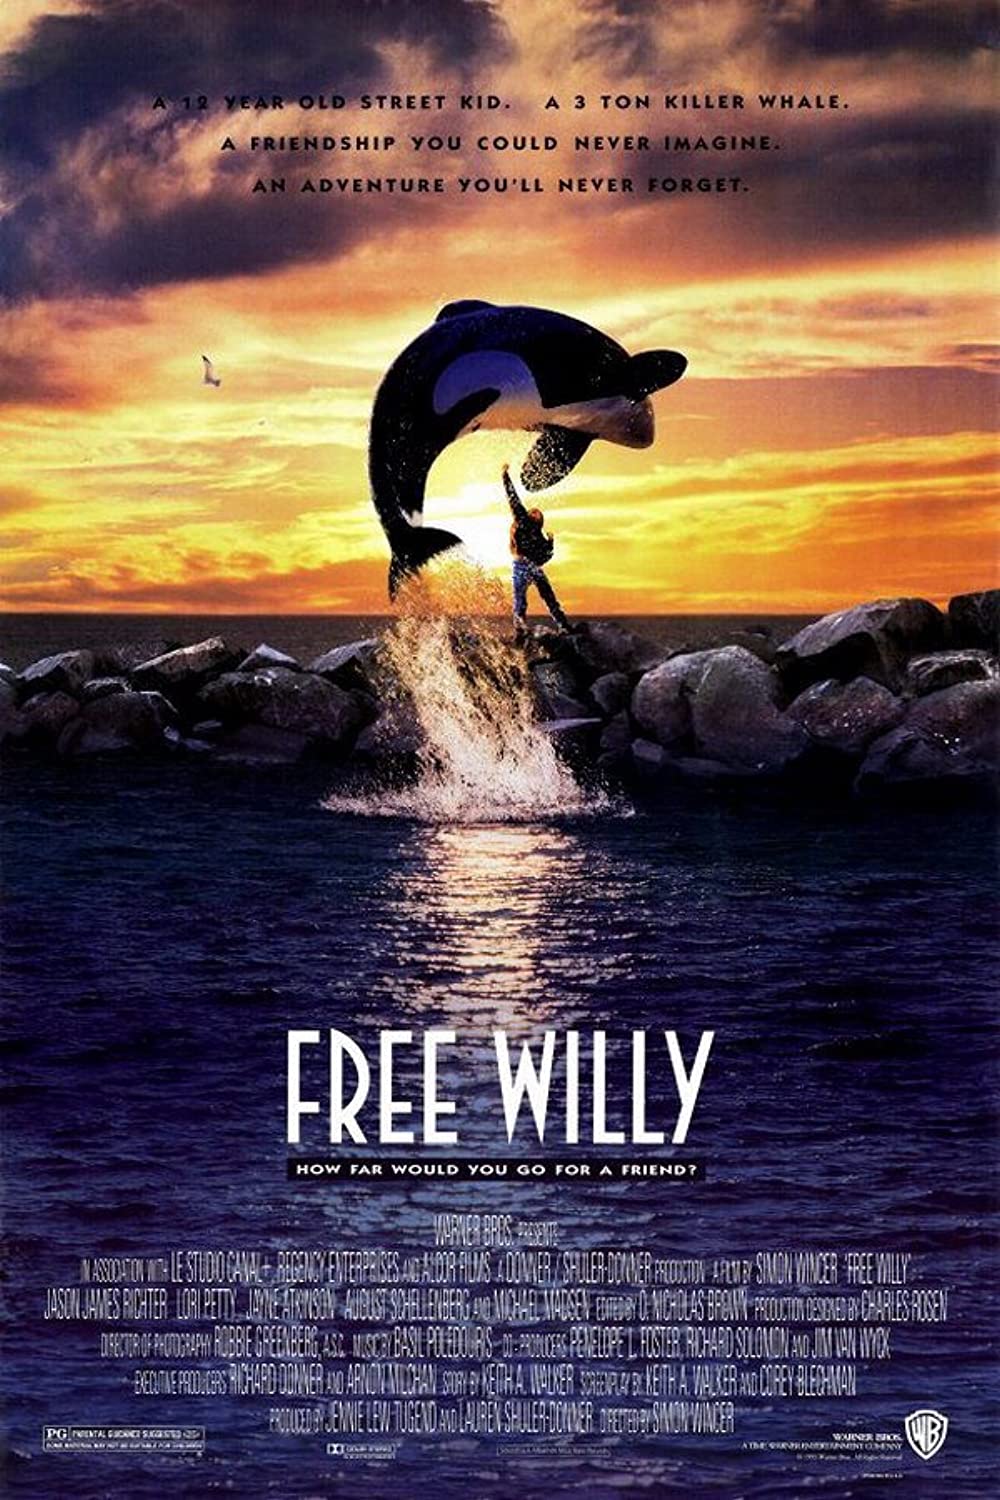 Filmbeschreibung zu Free Willy